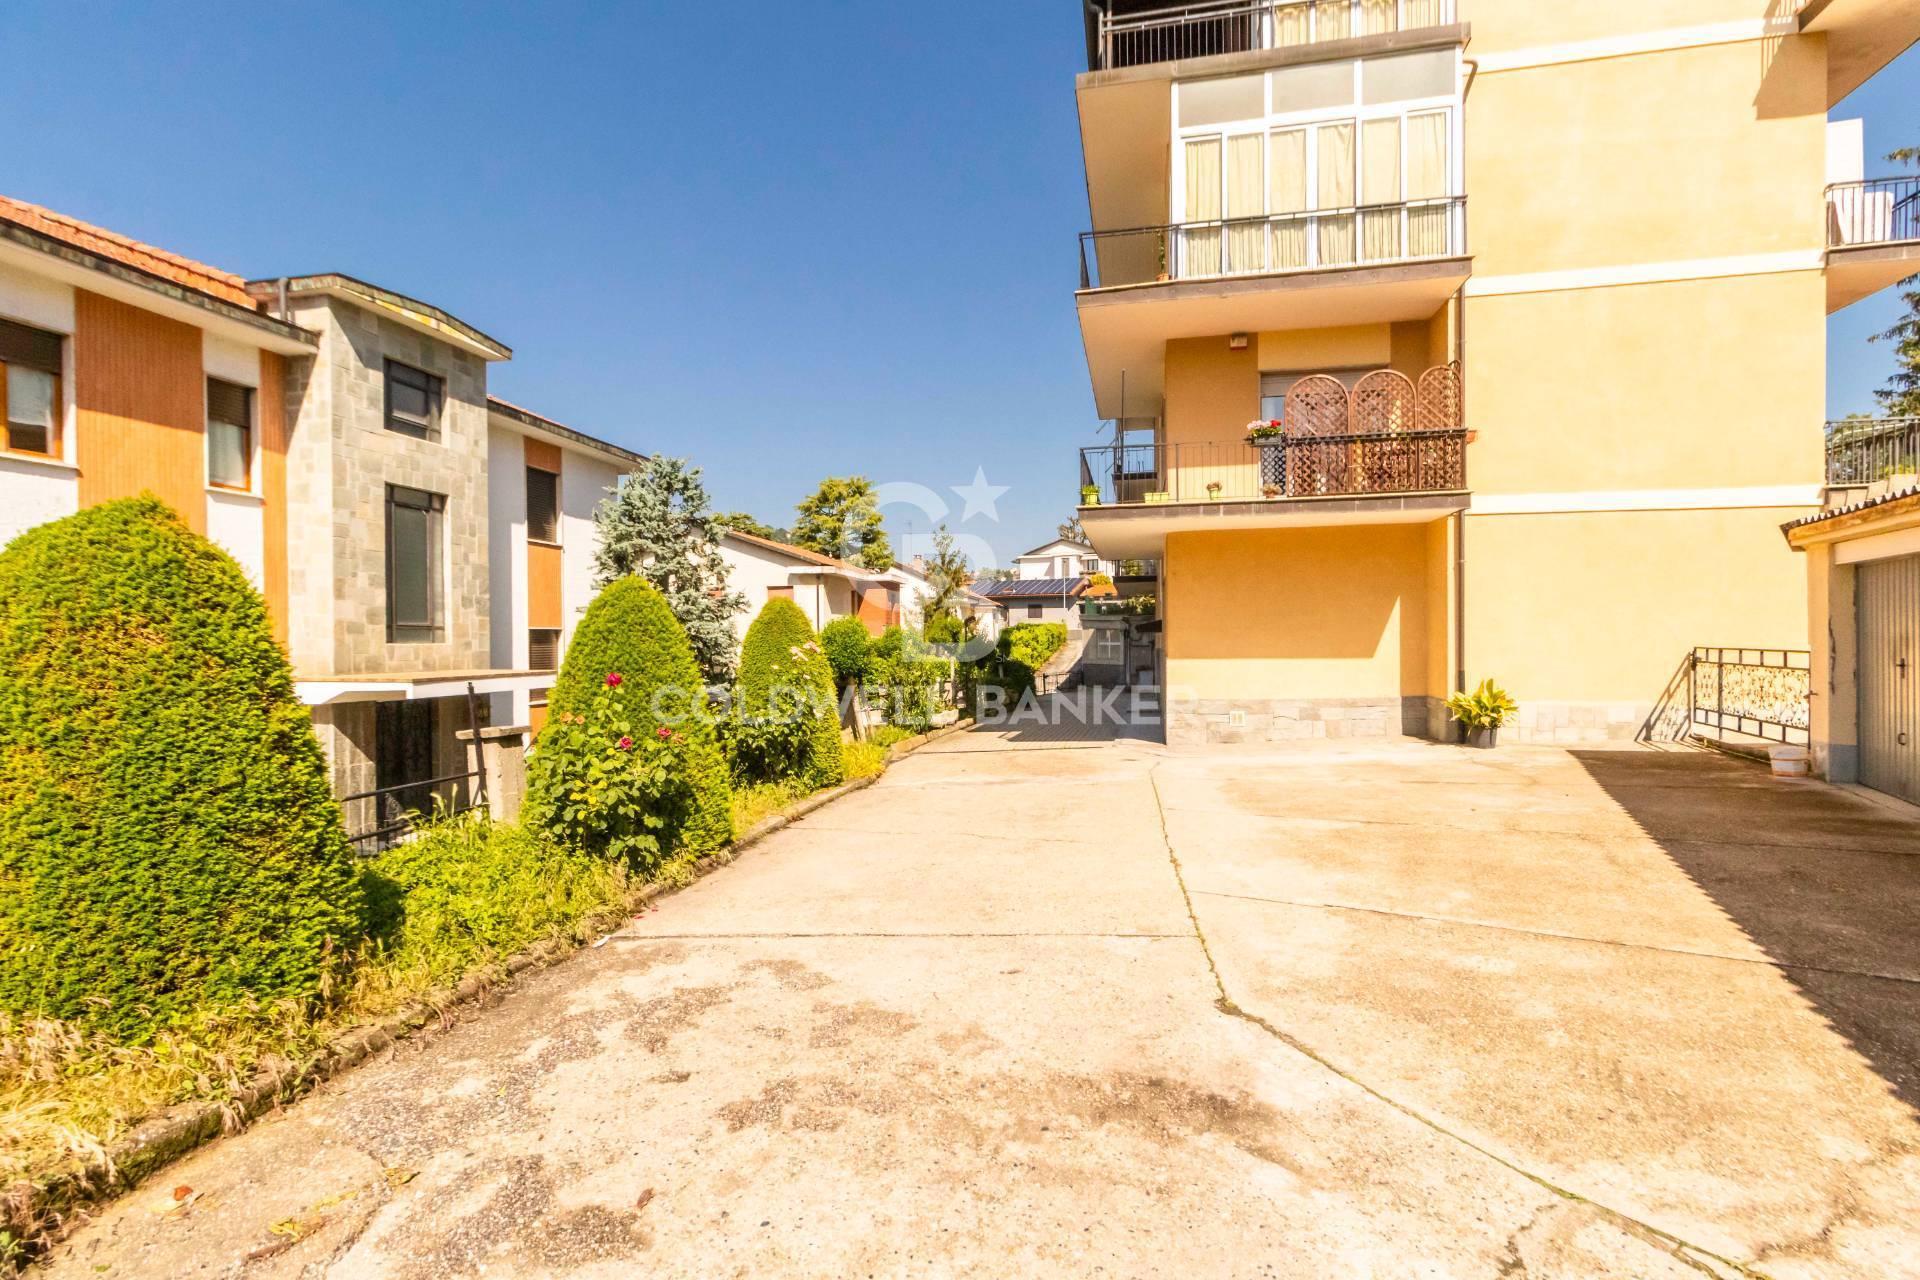 Appartamento in vendita a Pino Torinese, 4 locali, prezzo € 155.000 | PortaleAgenzieImmobiliari.it